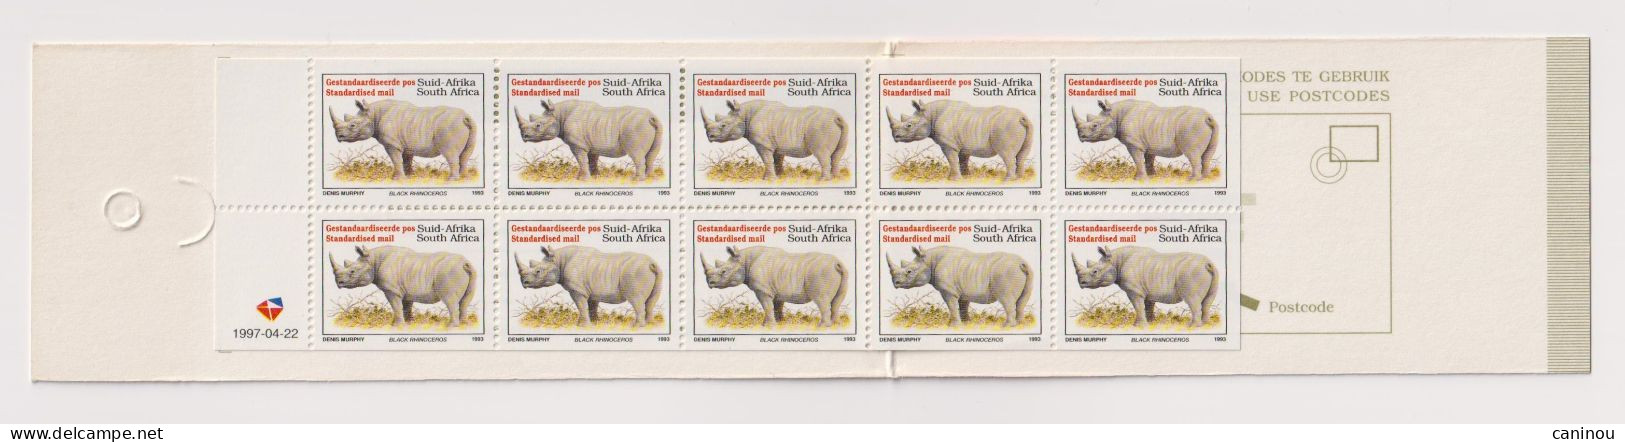 AFRIQUE DU SUD   Y & T CARNET EXPOSITION PHILATELIQUE ILSAPEX RHINOCEROS 1993 / 1997 NEUF - Postzegelboekjes